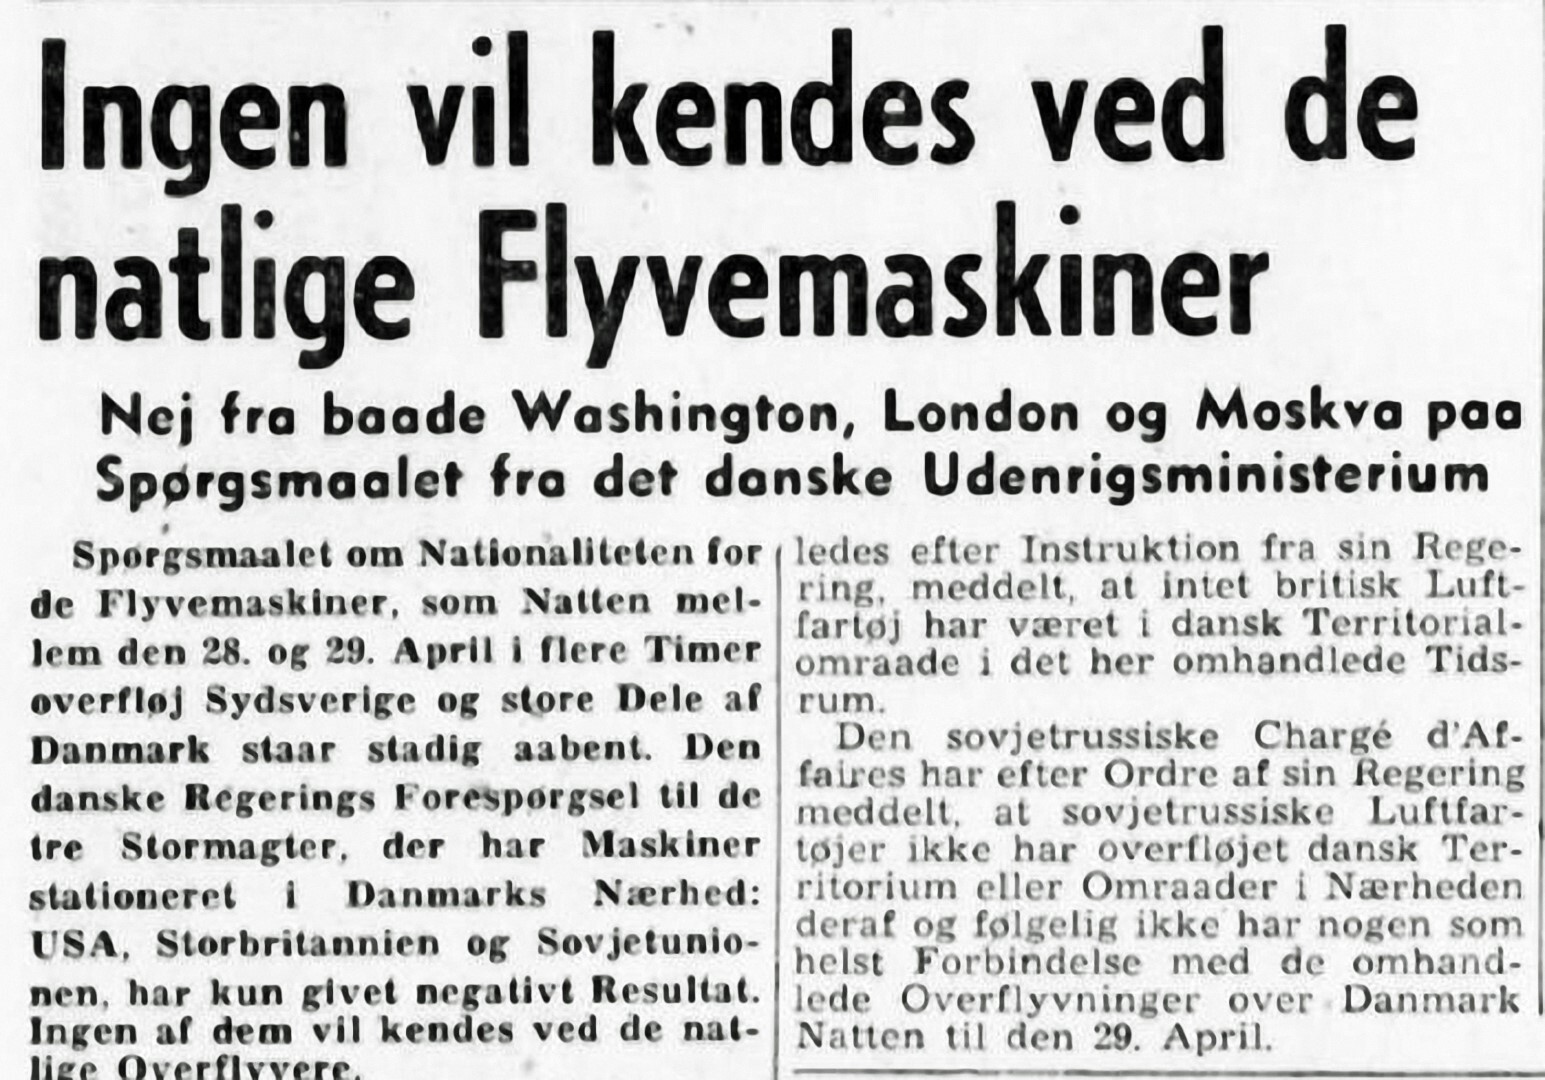 04-berlingske-tidende-1954-05-09-ingen-vil-kendes-ved-fly-res-aendret-storrelse-large